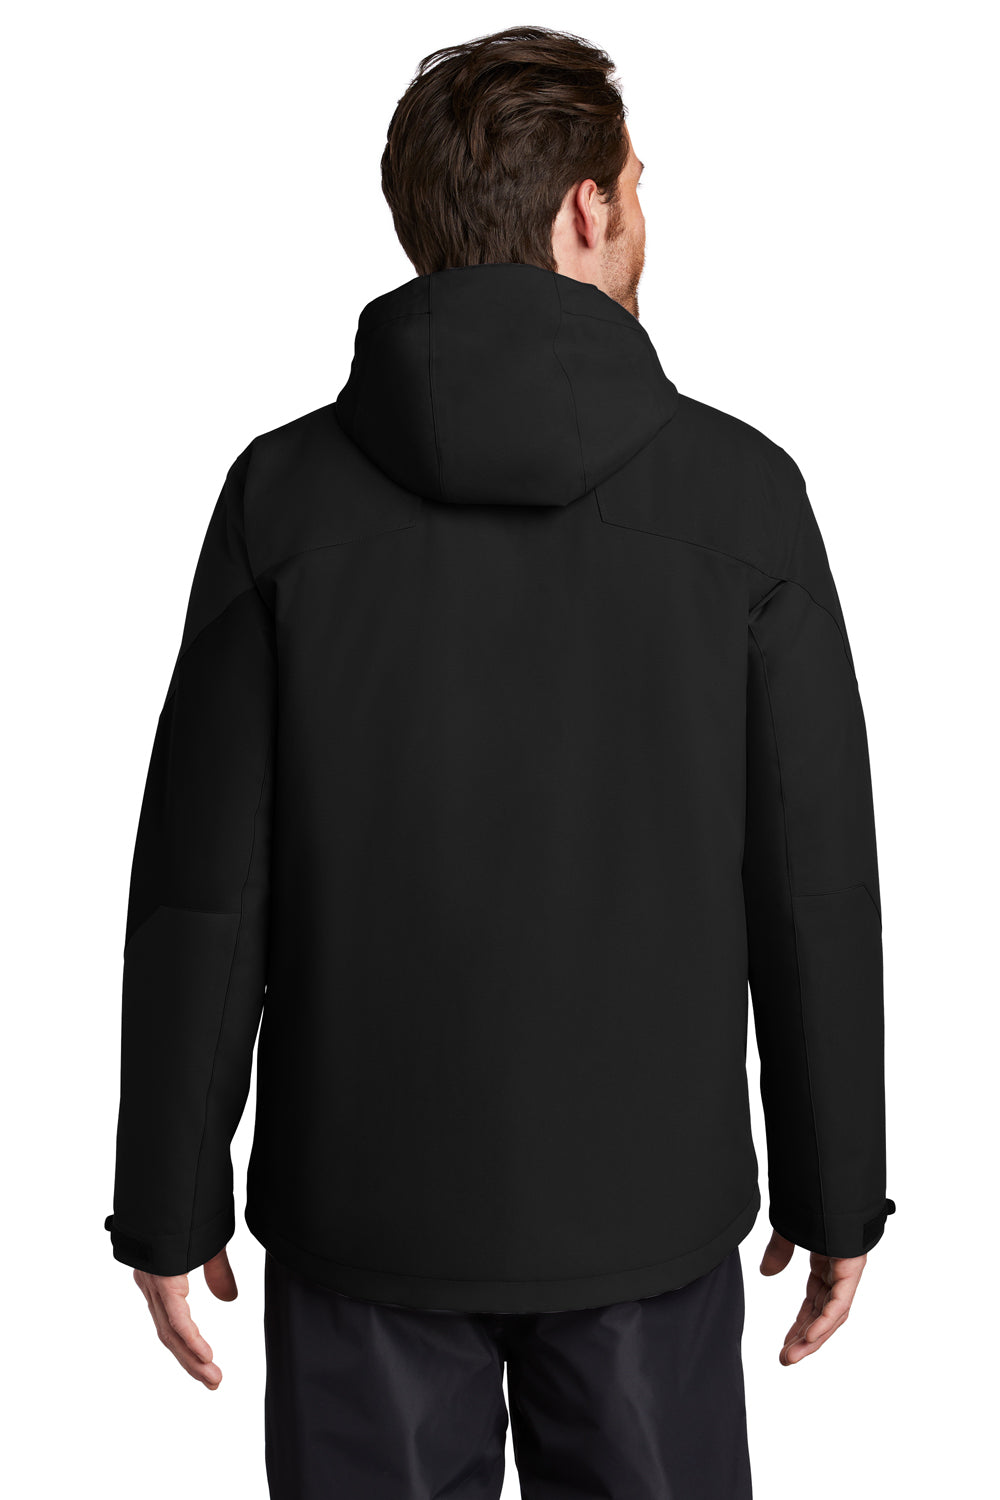 Port Authority Mens Tech Waterproof Full Zip Hooded Jacket Deep Black Side